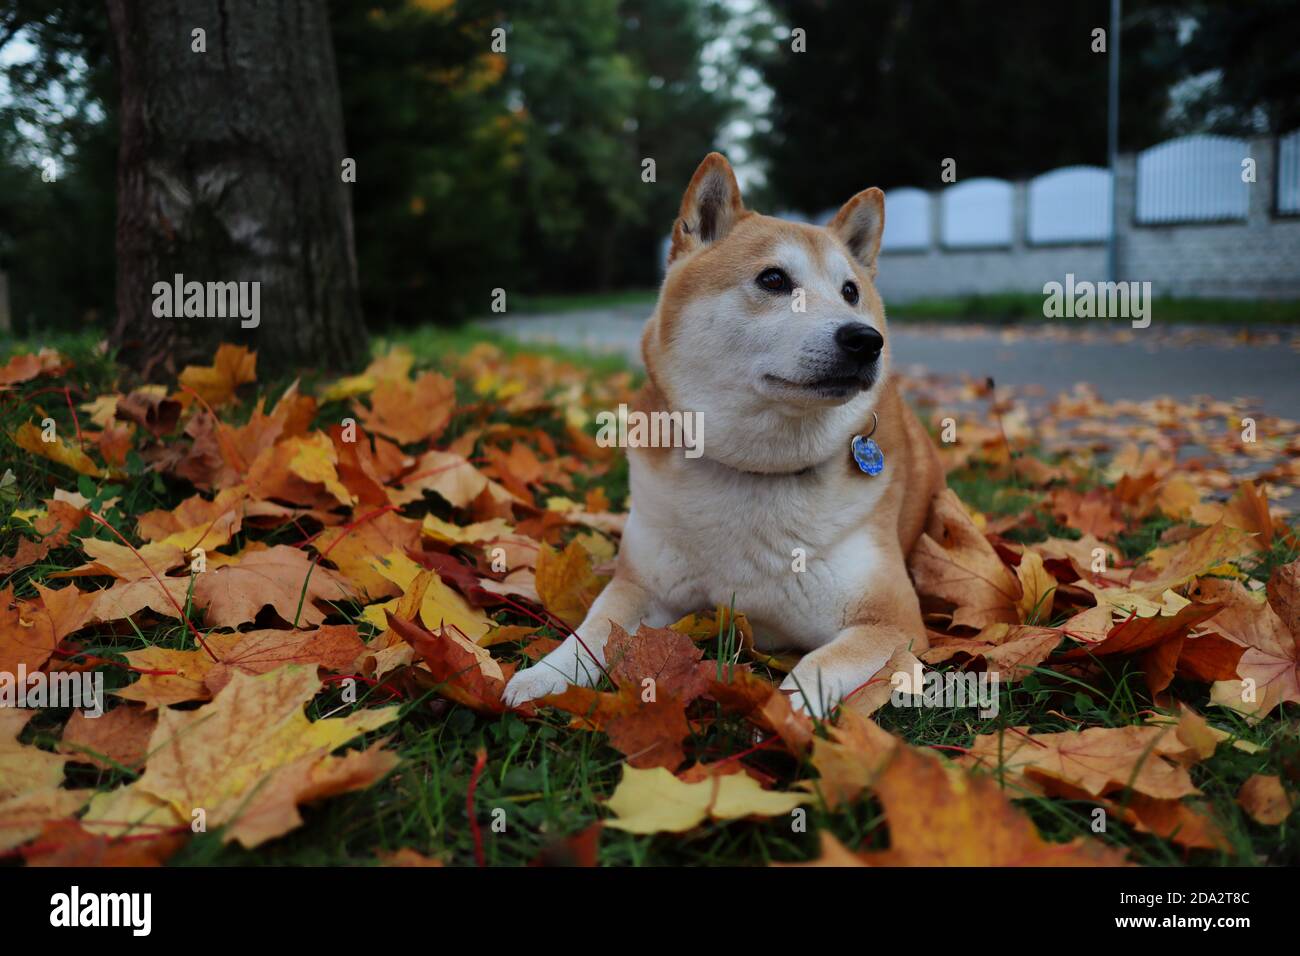 L'adorabile Shiba Inu si trova sulle foglie cadenti dell'autunno durante la stagione autunnale. Shiba è un cane di razza giapponese. Foto Stock